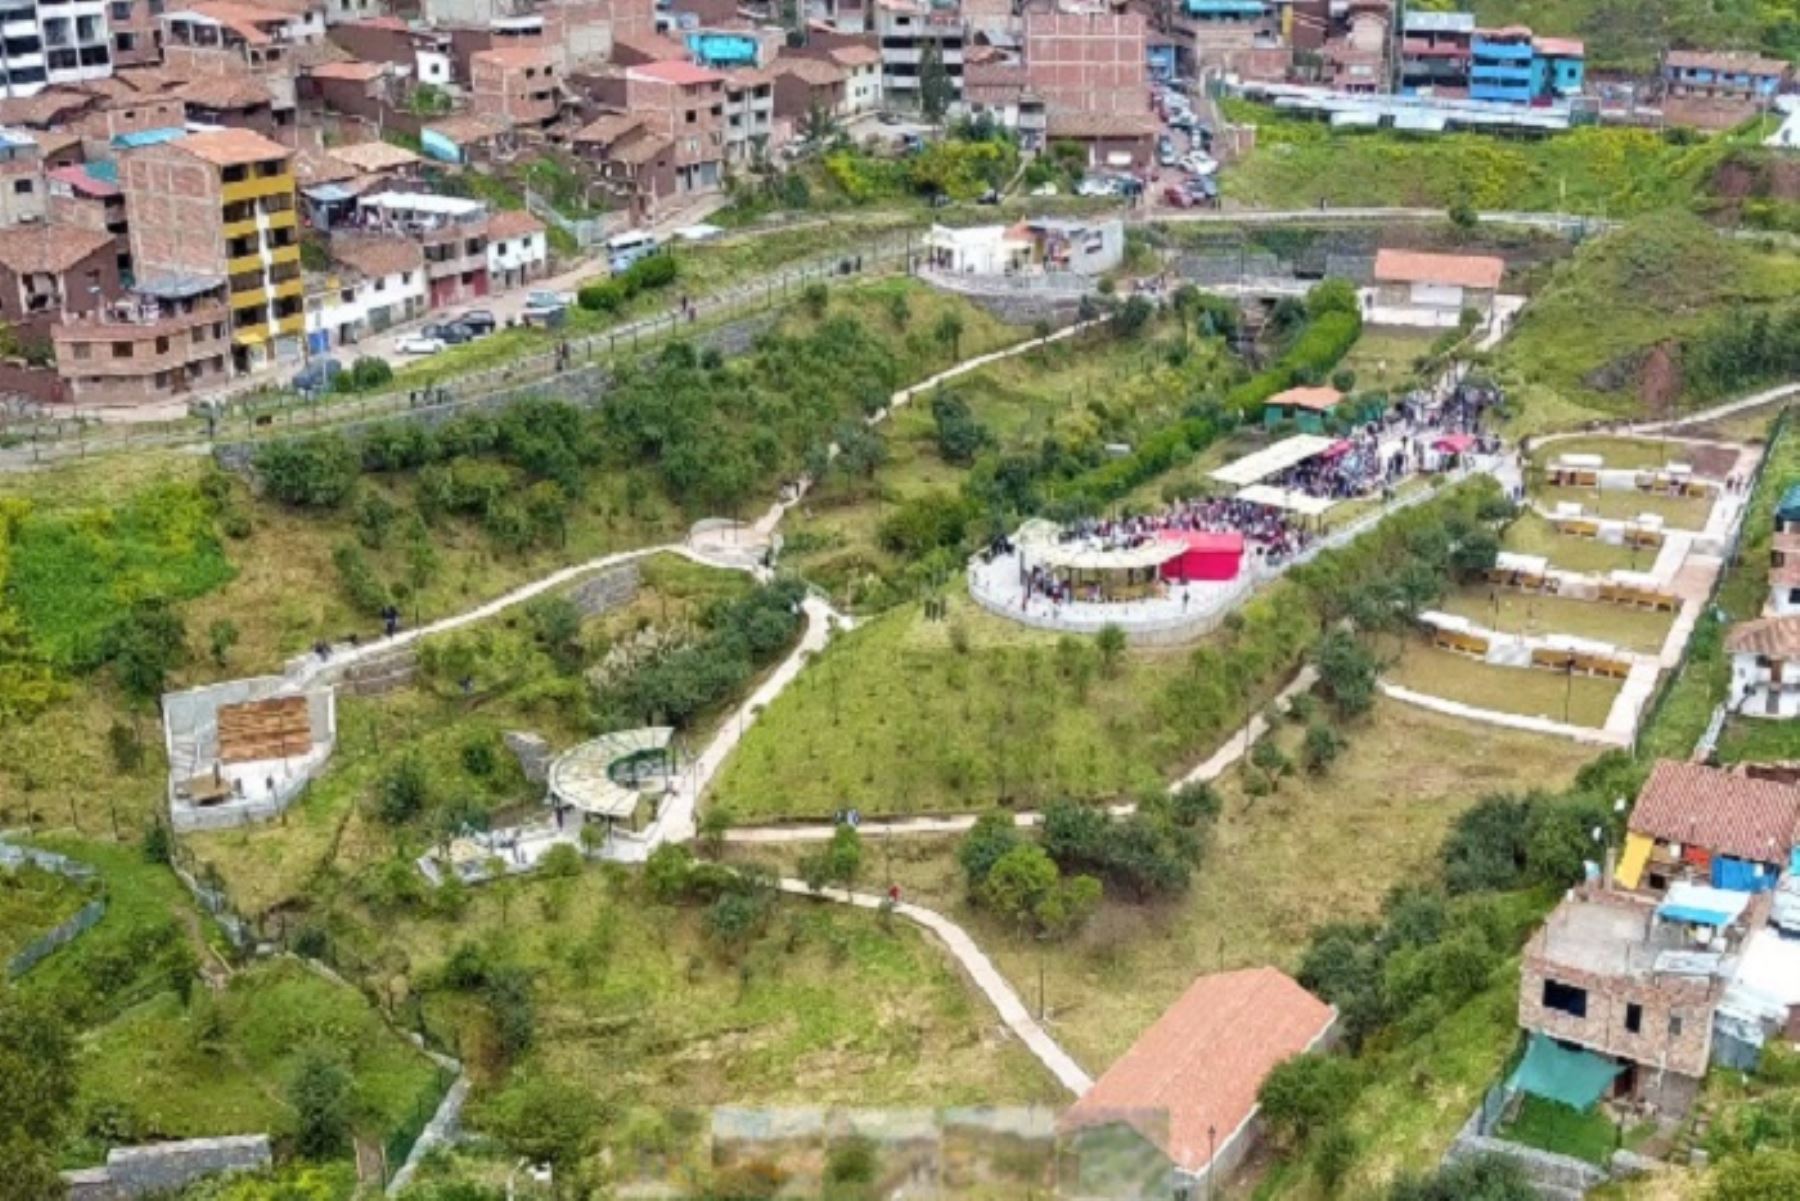 Conozca el primer parque ecológico de la ciudad del Cusco